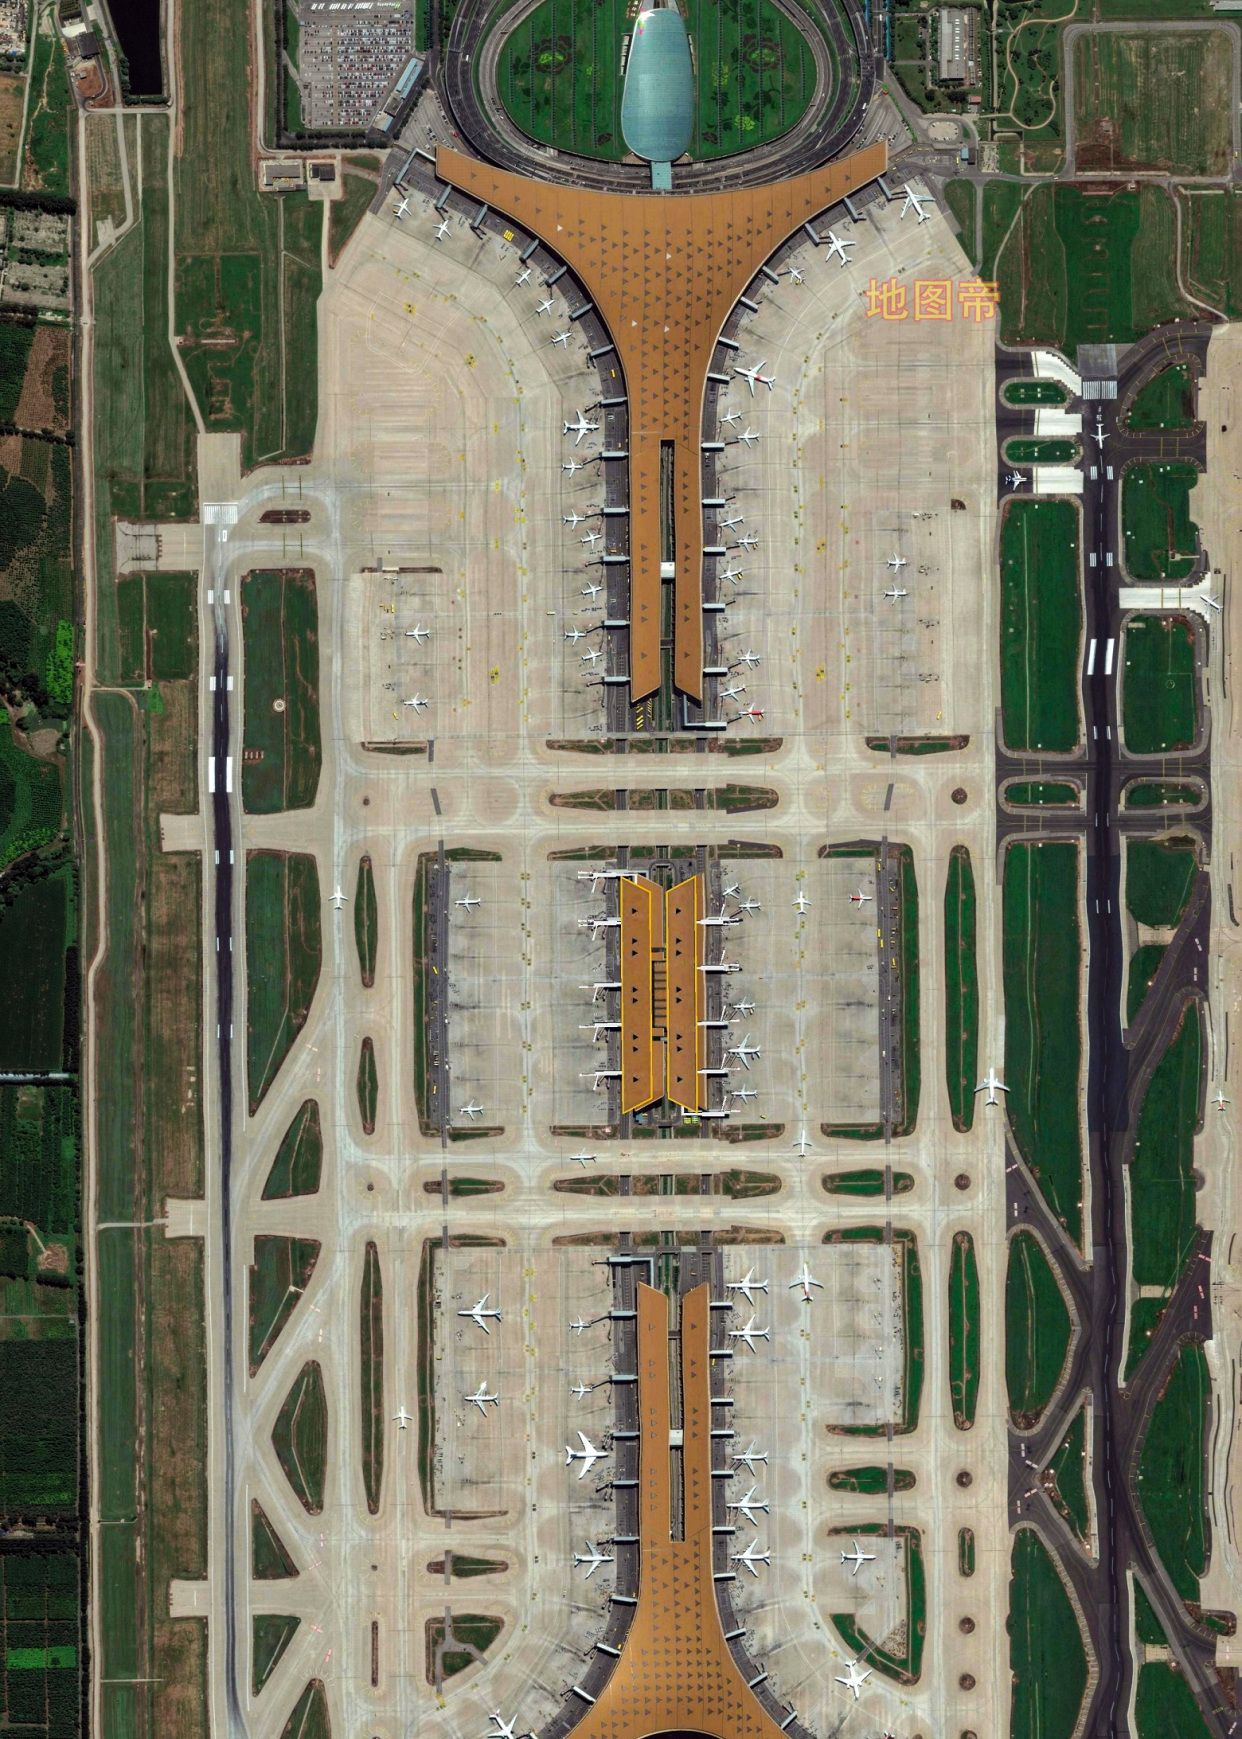 上海虹桥机场T1航站楼改造及交通中心工程 / 华东建筑设计研究总院 – 有方